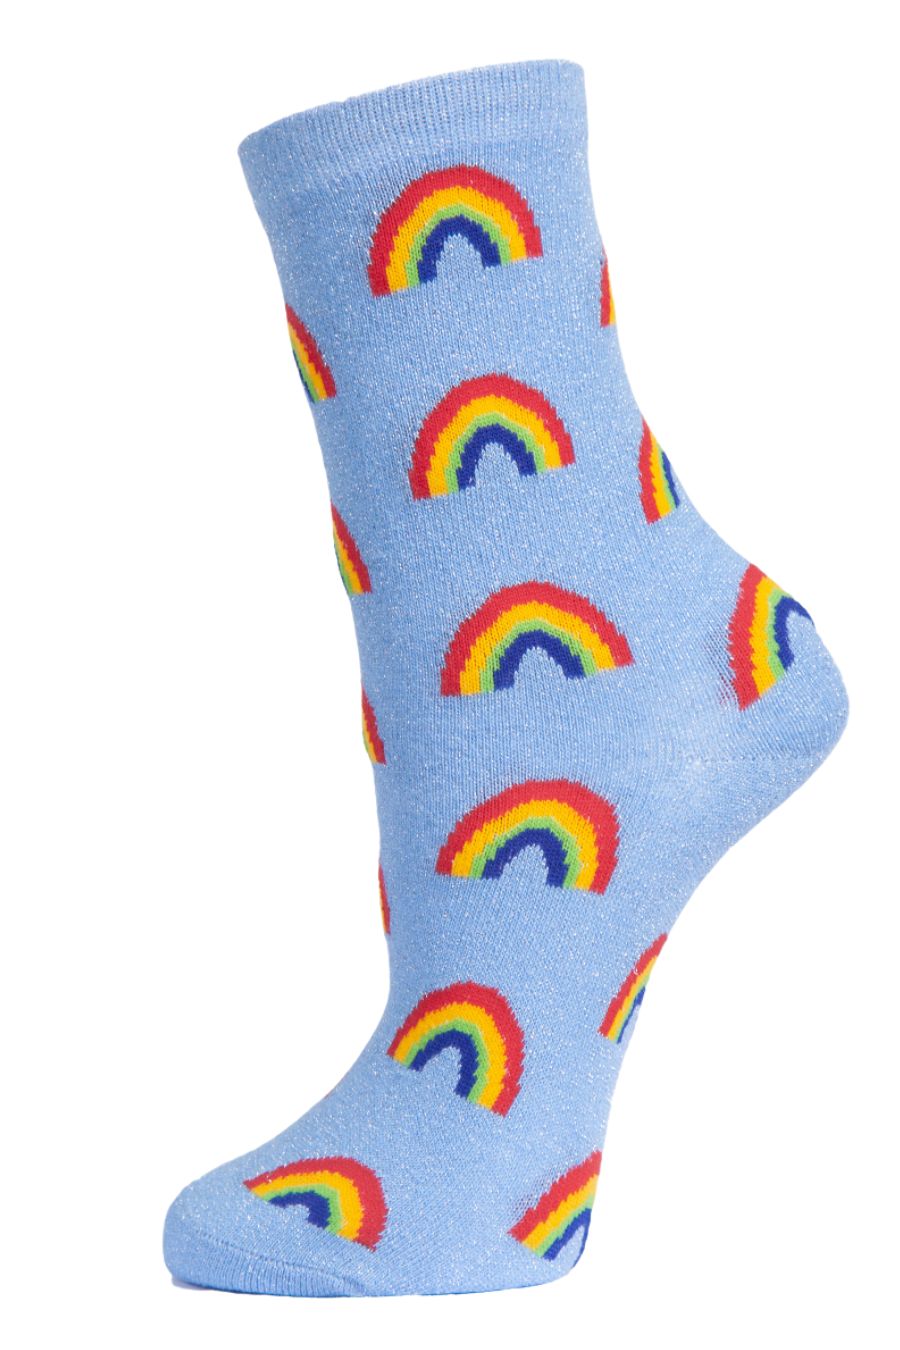 Womens Rainbow Socks Glitter Ankle Socks Blue Sparkly Shimmer